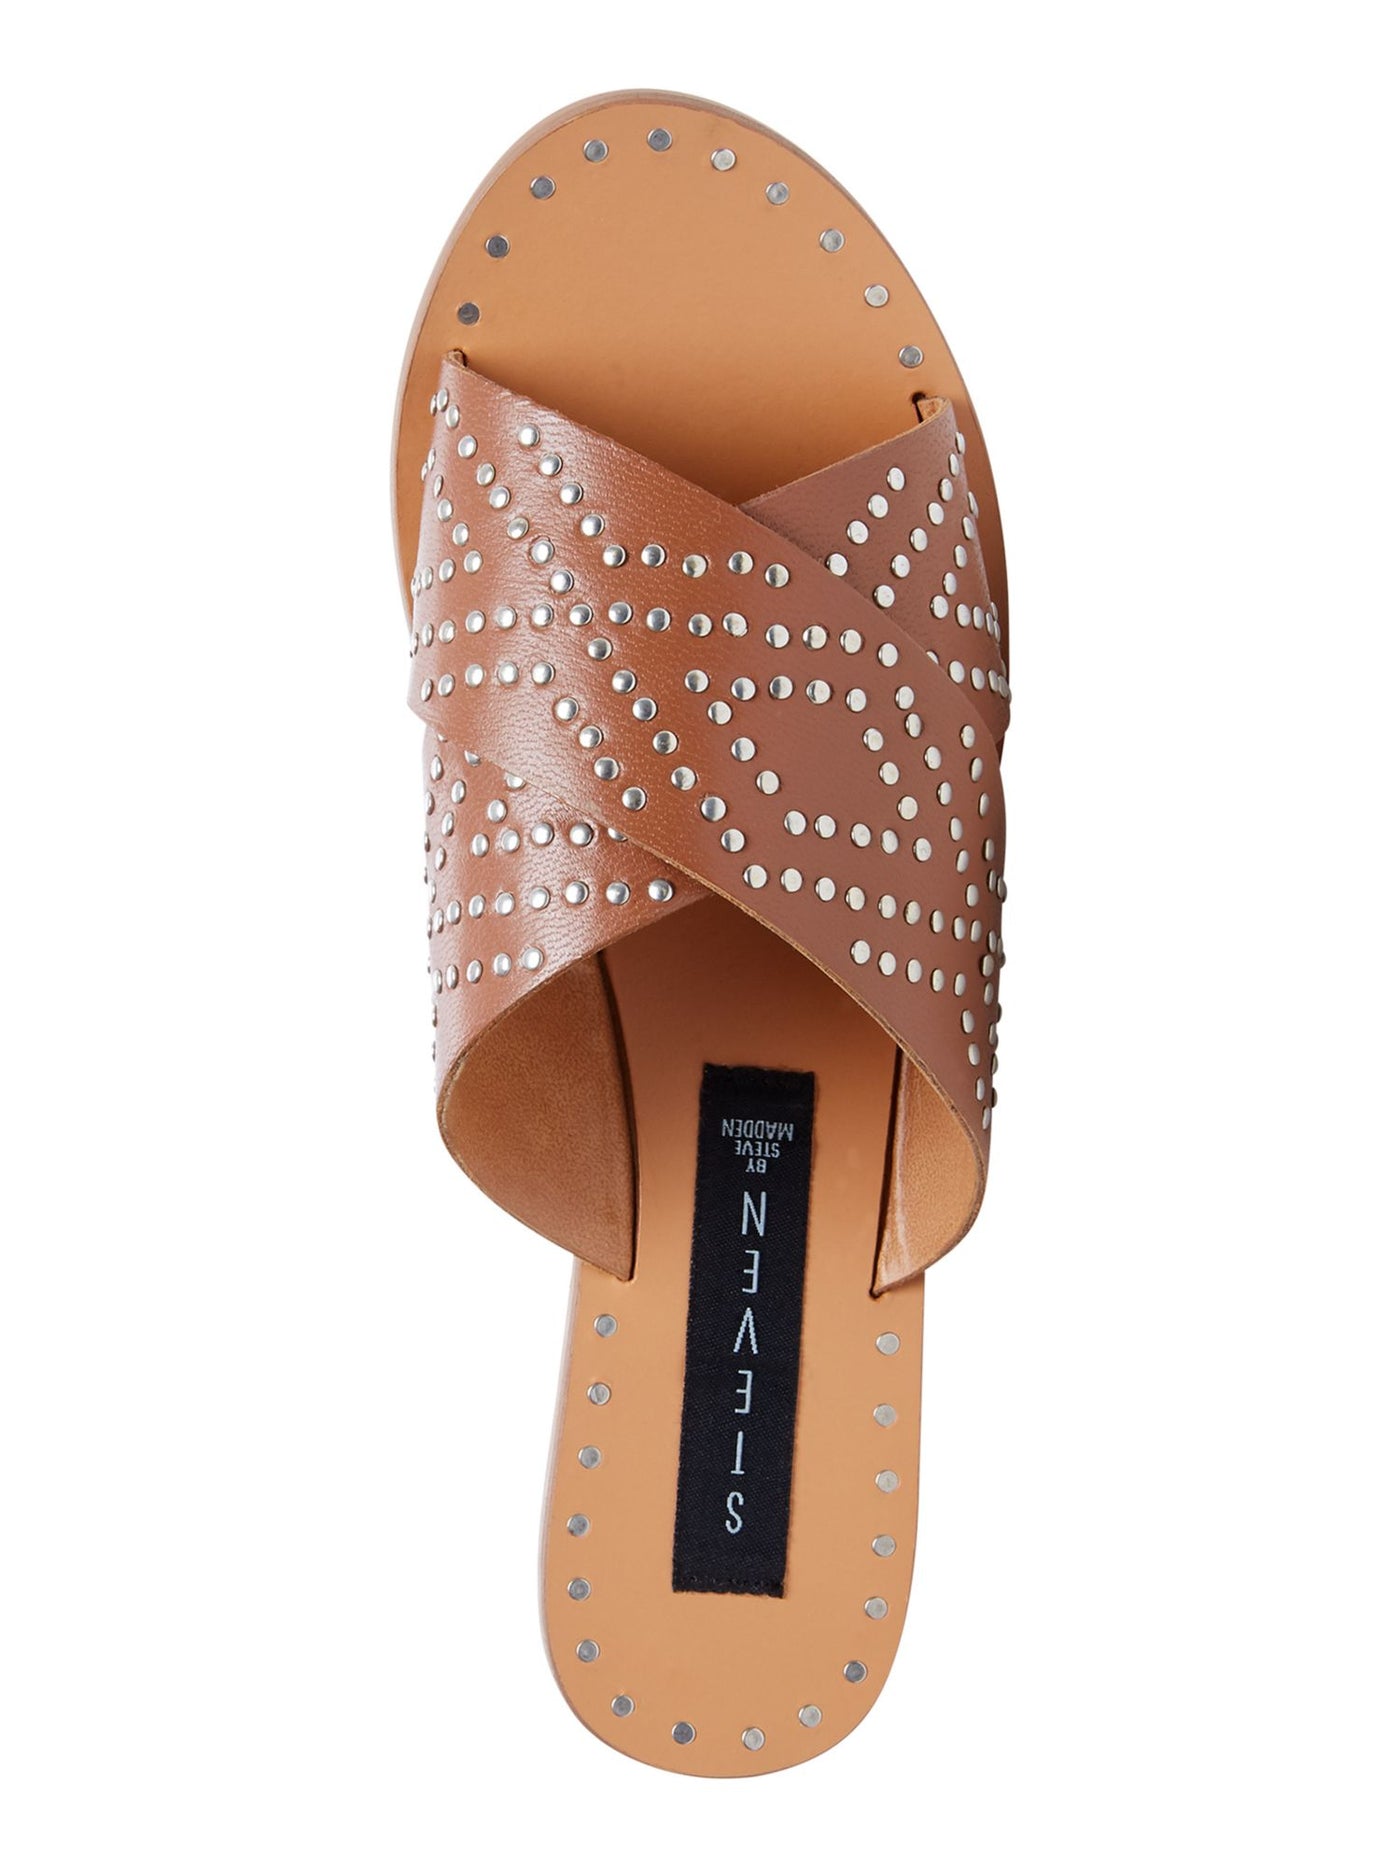 STEVEN Womens Brown Crisscross Straps Studded Girlish Round Toe Slip On Leather Slide Sandals Shoes 9